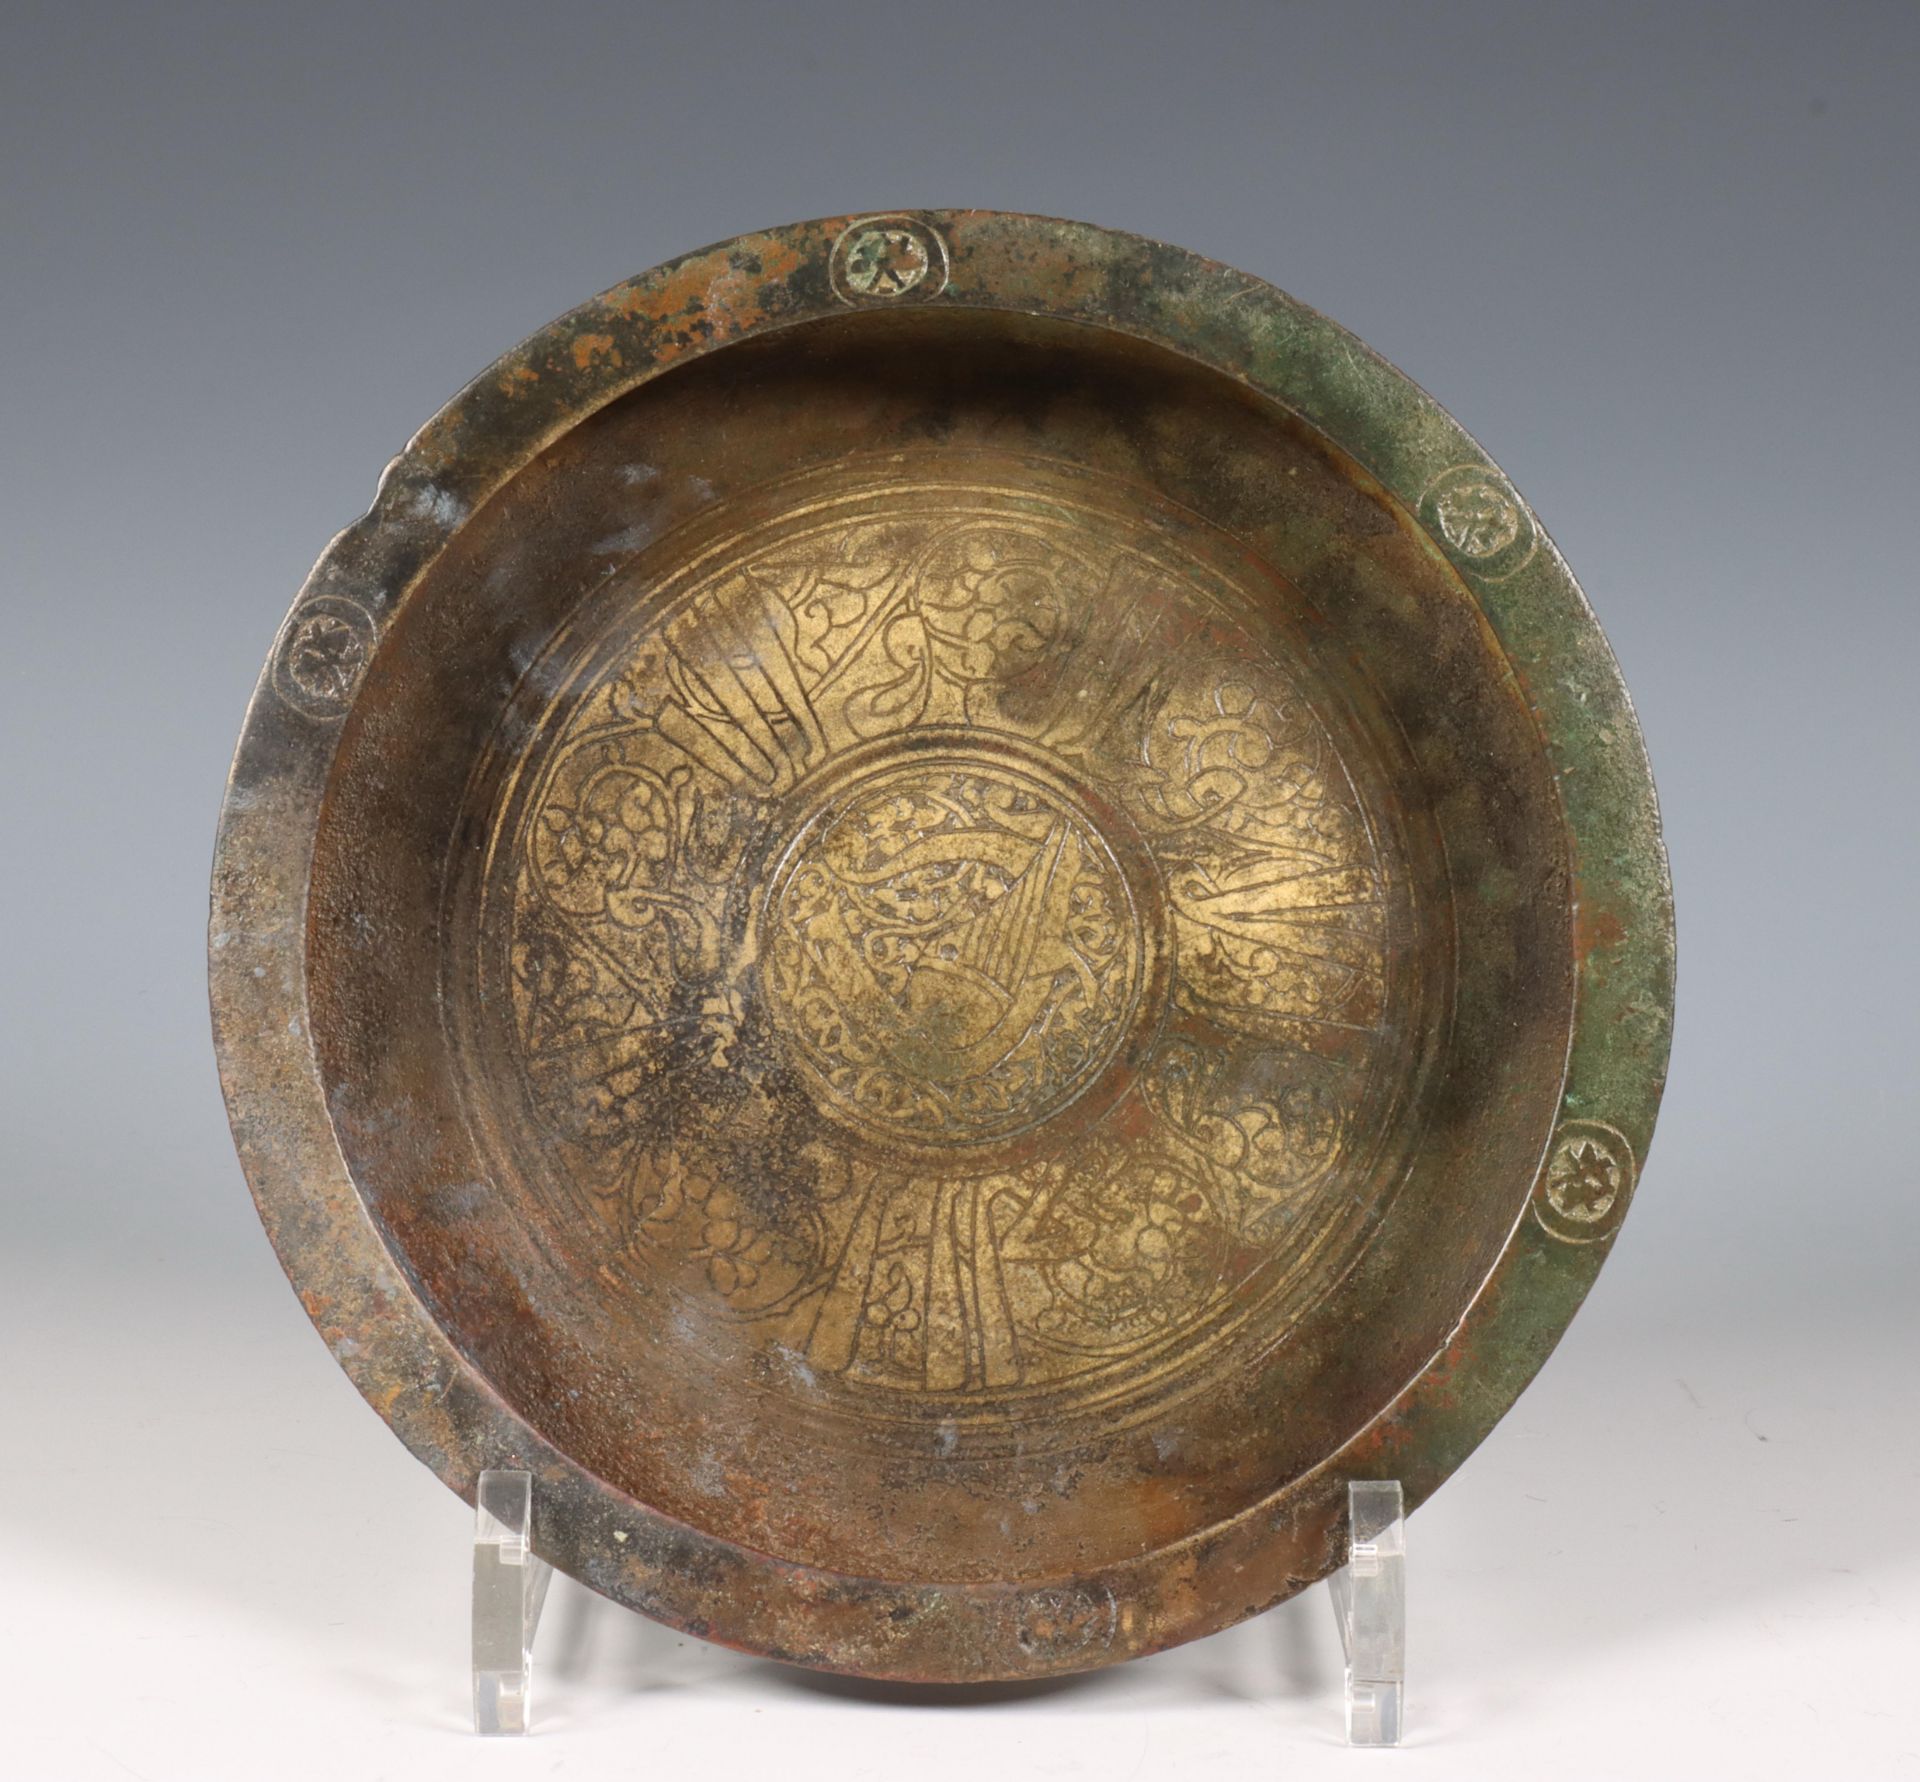 Persia, bronze Seljuk ceremonial bowl, ca. 1100-1200, - Image 2 of 4